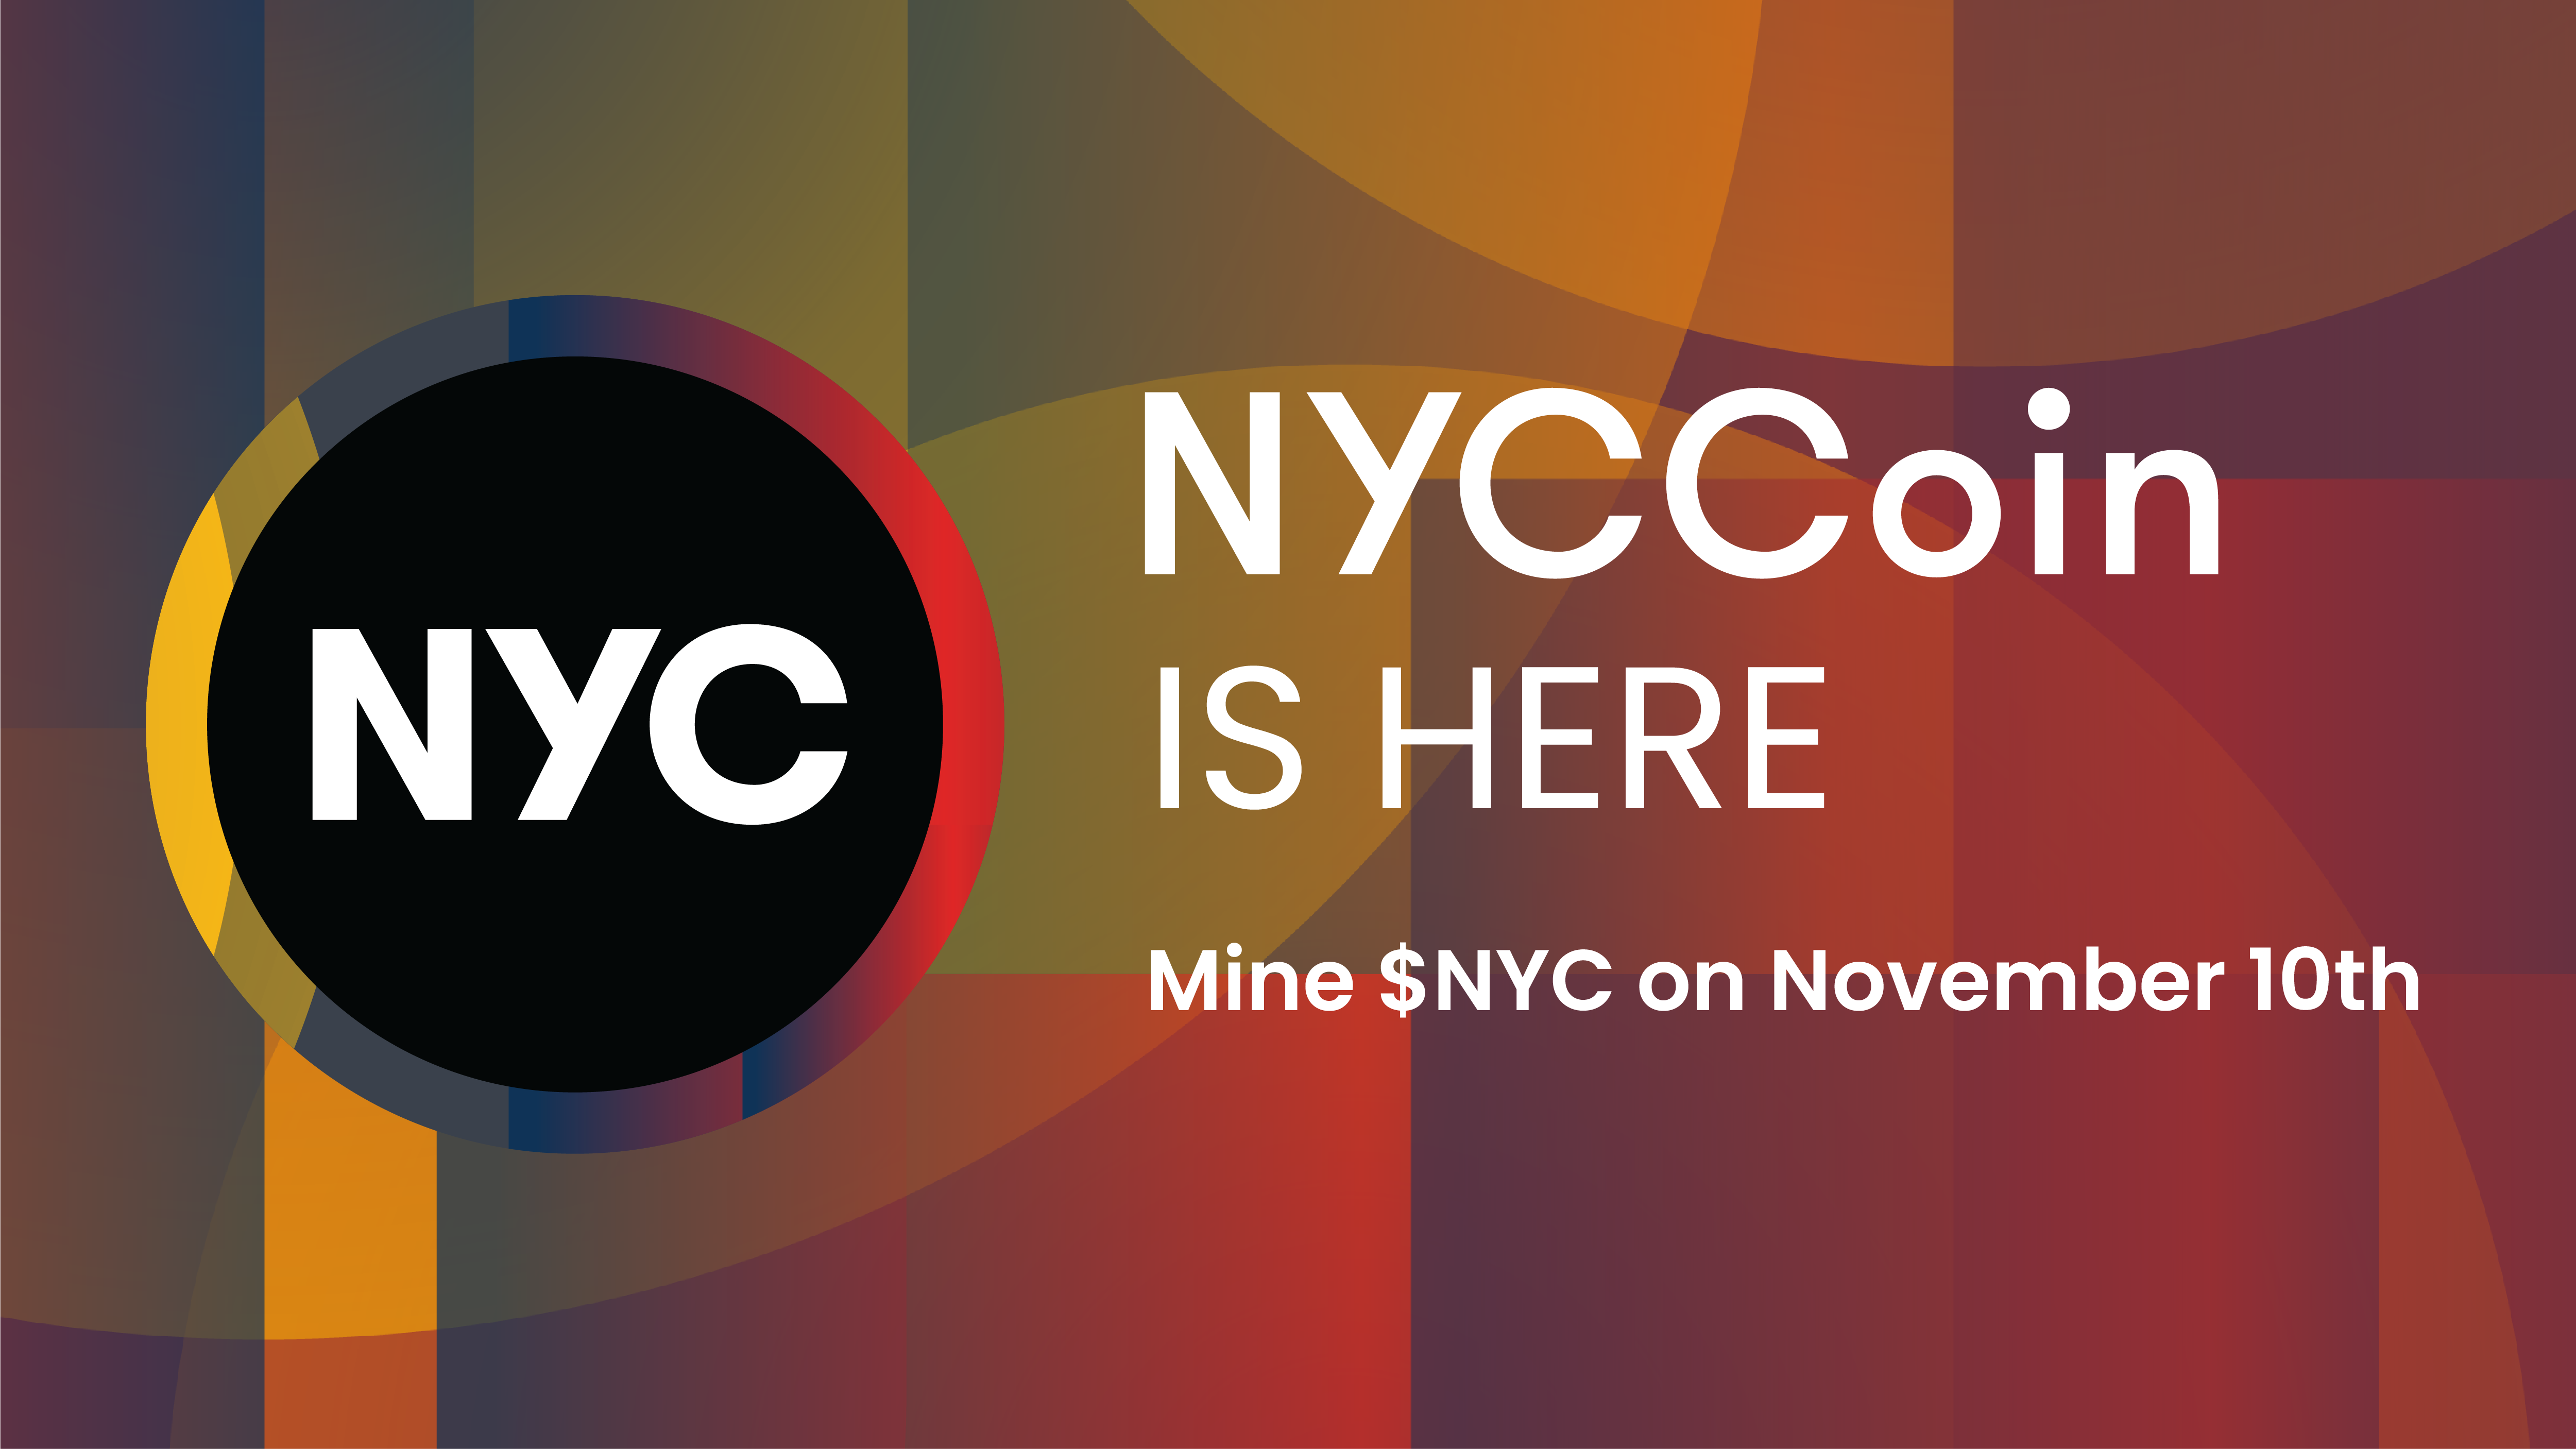 کوین NYCcoin رمز ارز نیویورک از فردا عرضه خواهد شد